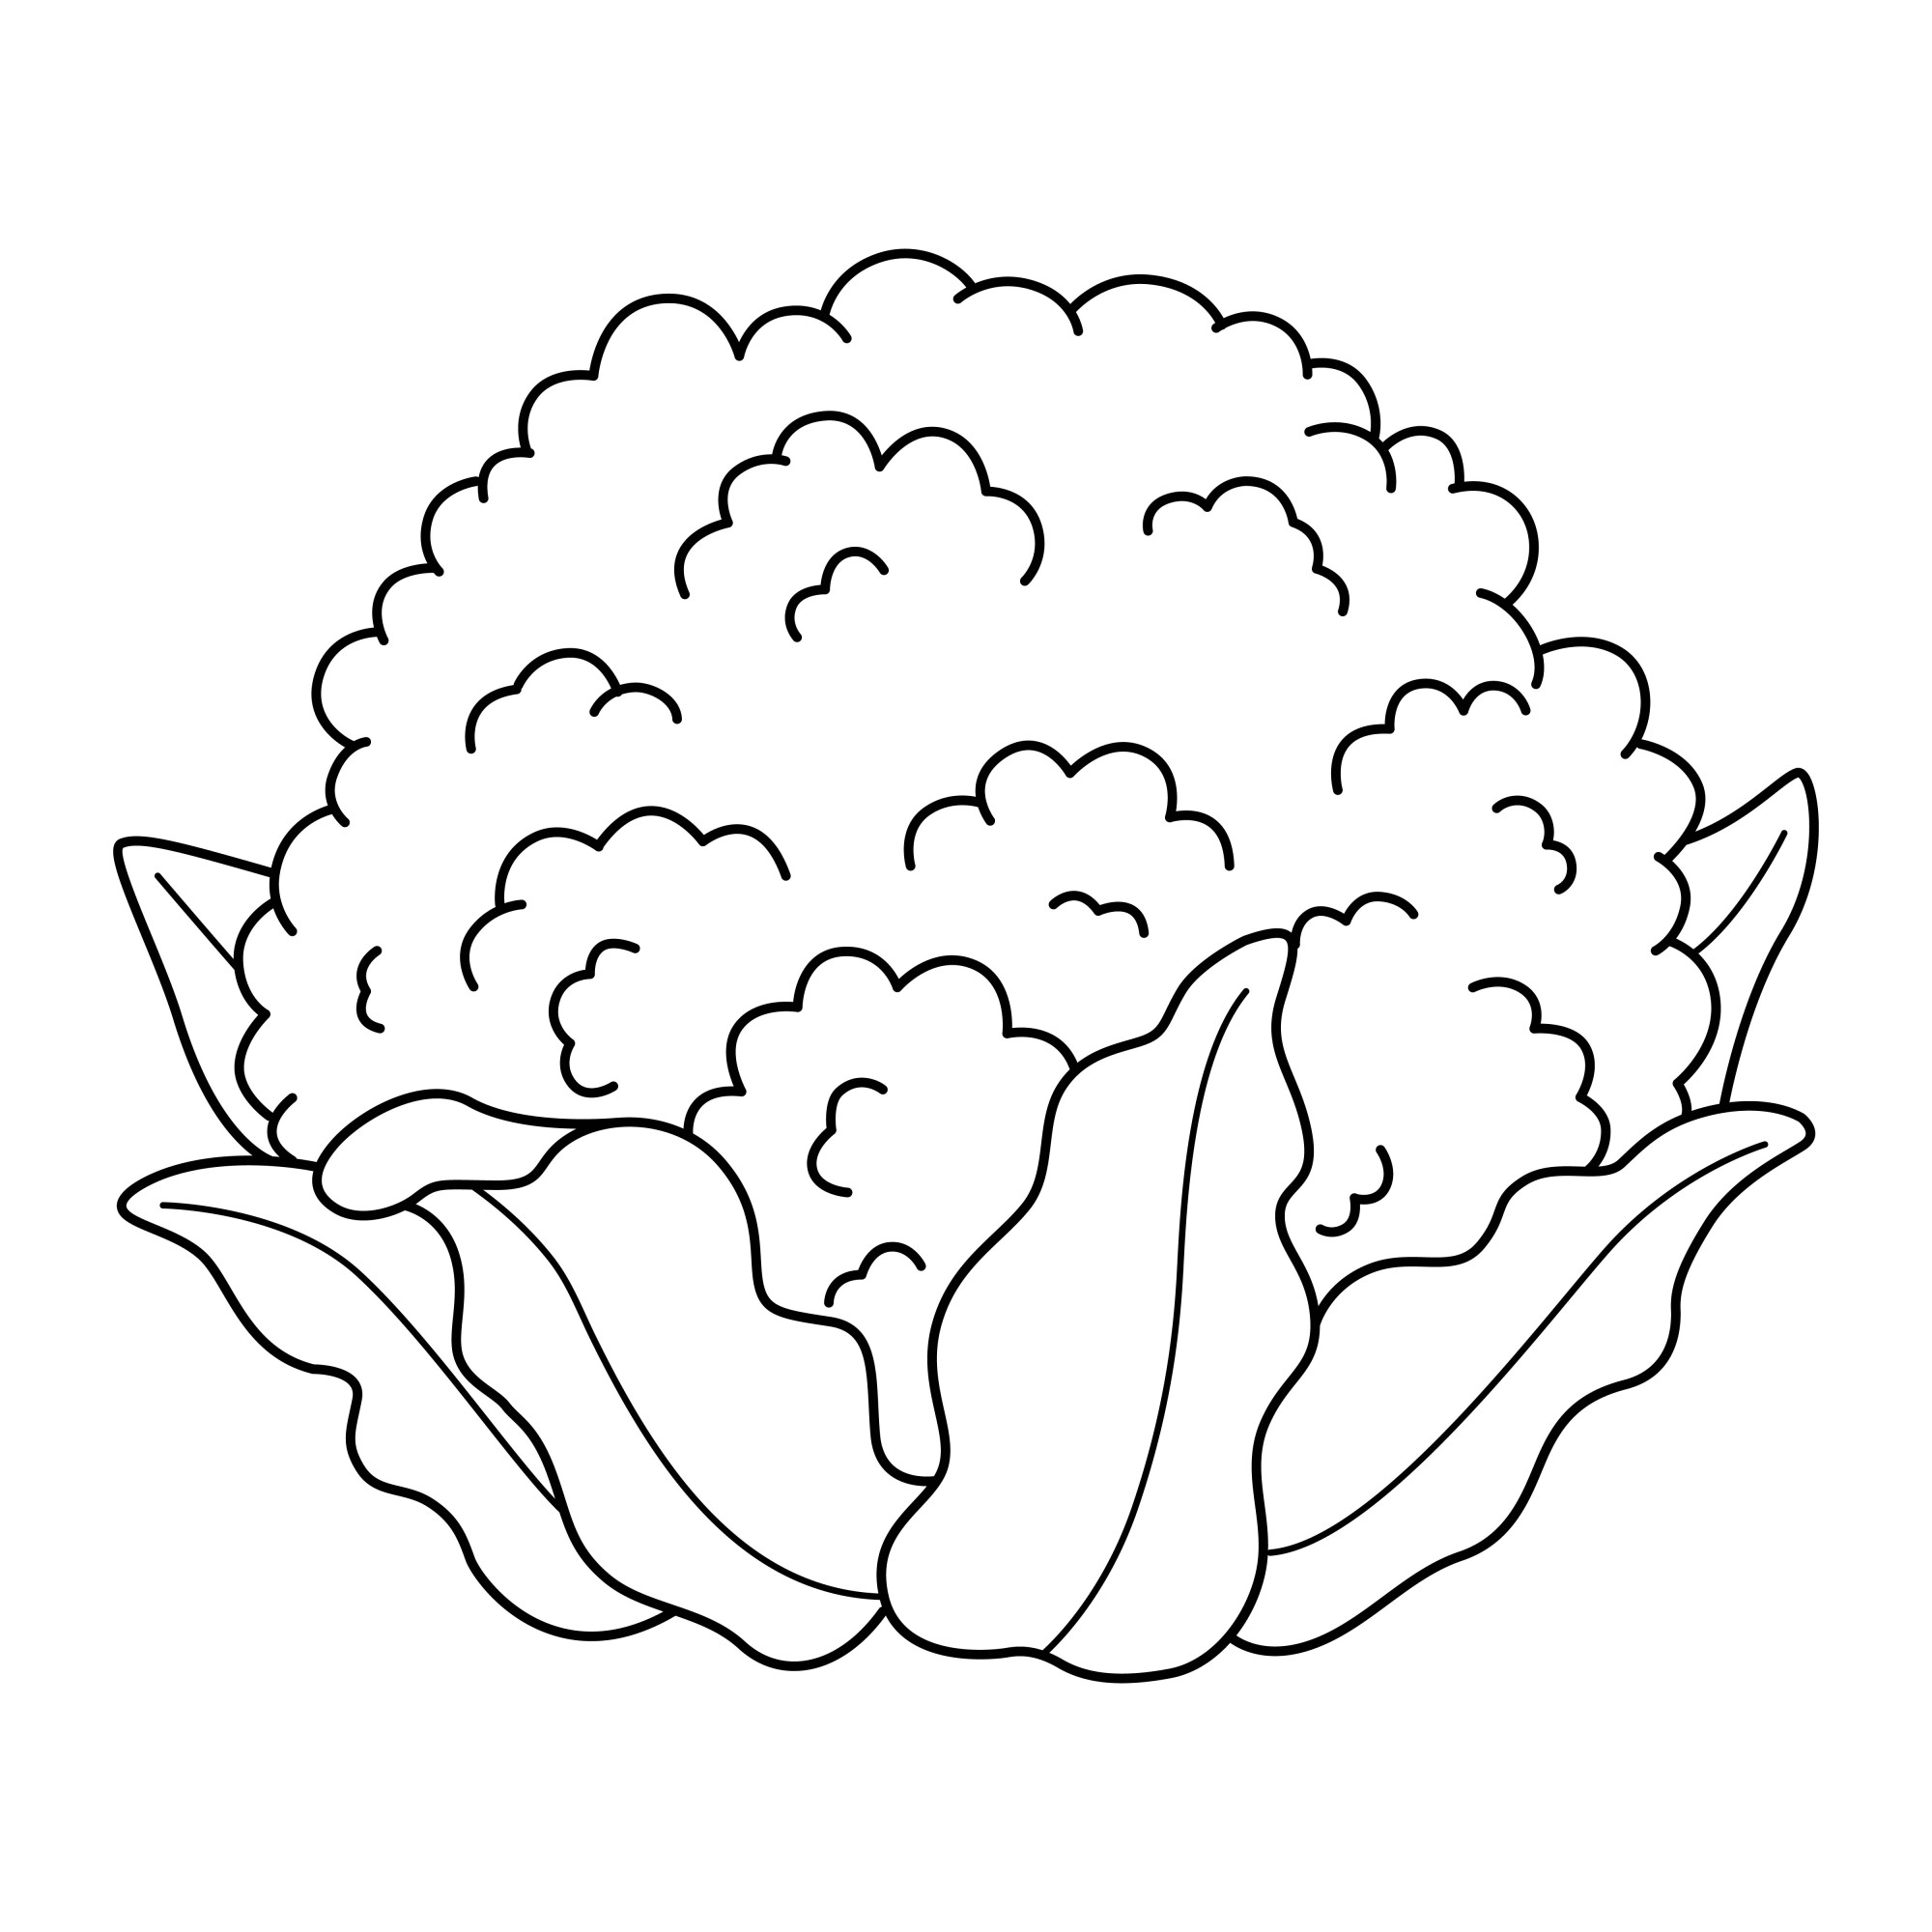 Раскраска для детей: кочан цветной капусты с листьями